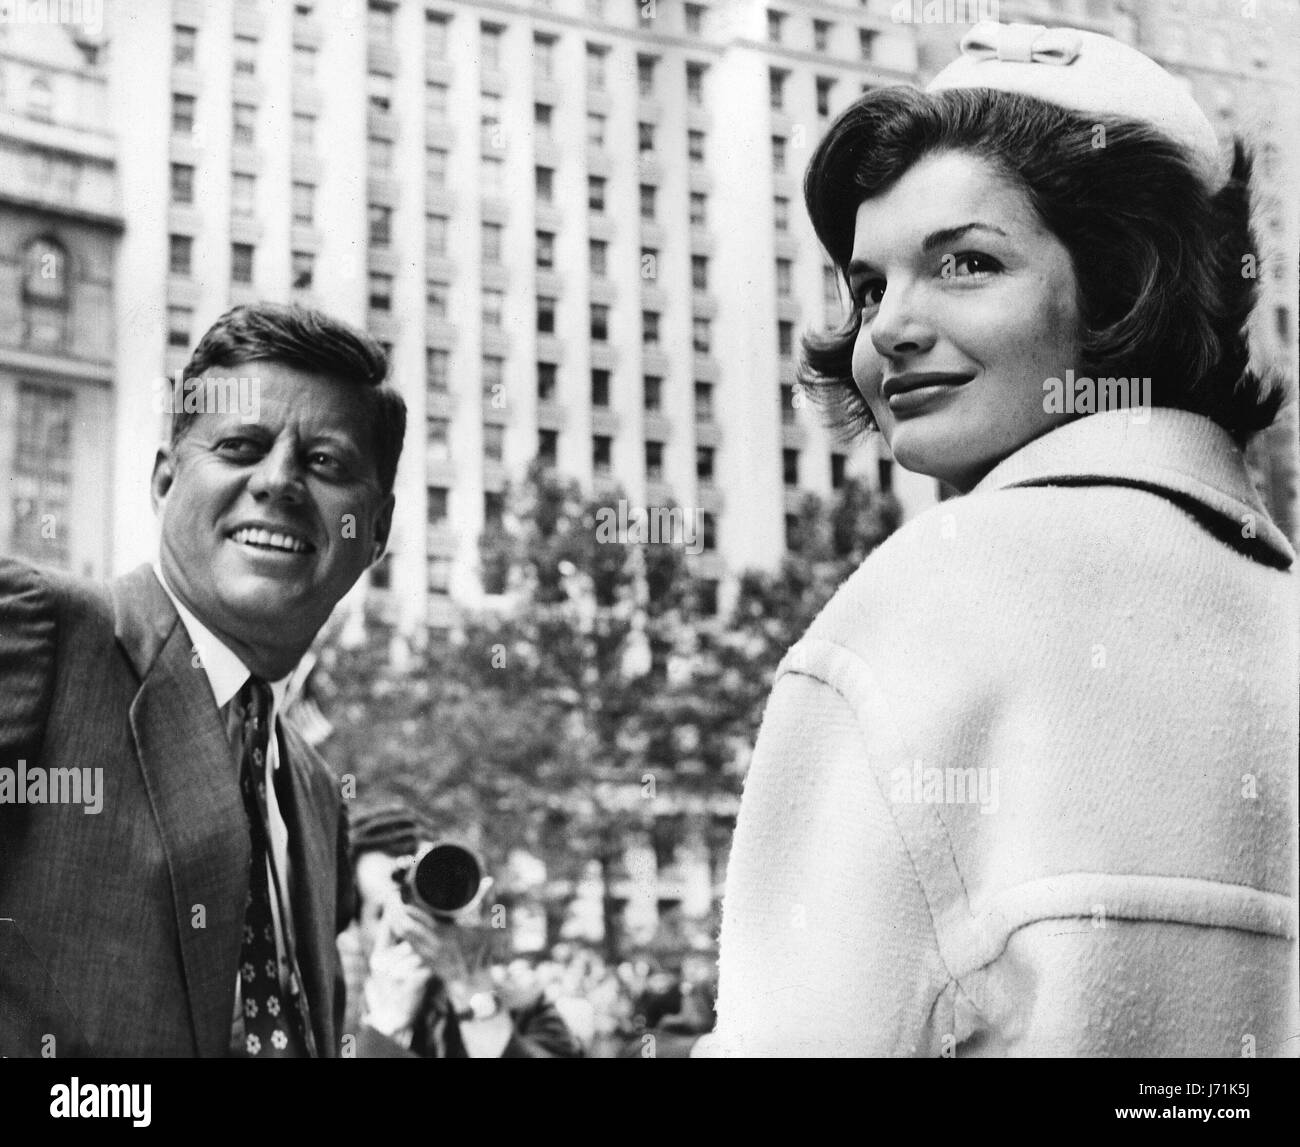 John F. Kennedy, le 35e Président de la nation, aurait eu 100 ans le 29 mai 2017. Avec le centenaire de la naissance de John F. Kennedy, l'héritage de l'ancien président est célébré dans tout le pays. Sur la photo : 12 octobre, 1961 - New York, NY, États-Unis - John F. Kennedy a été le 35e président des États-Unis, ainsi que le plus jeune. Sur la photo : le président Kennedy avec la Première Dame Jackie Kennedy à une comédie de serpentins. Crédit : KEYSTONE Photos USA/ZUMAPRESS.com/Alamy Live News Banque D'Images